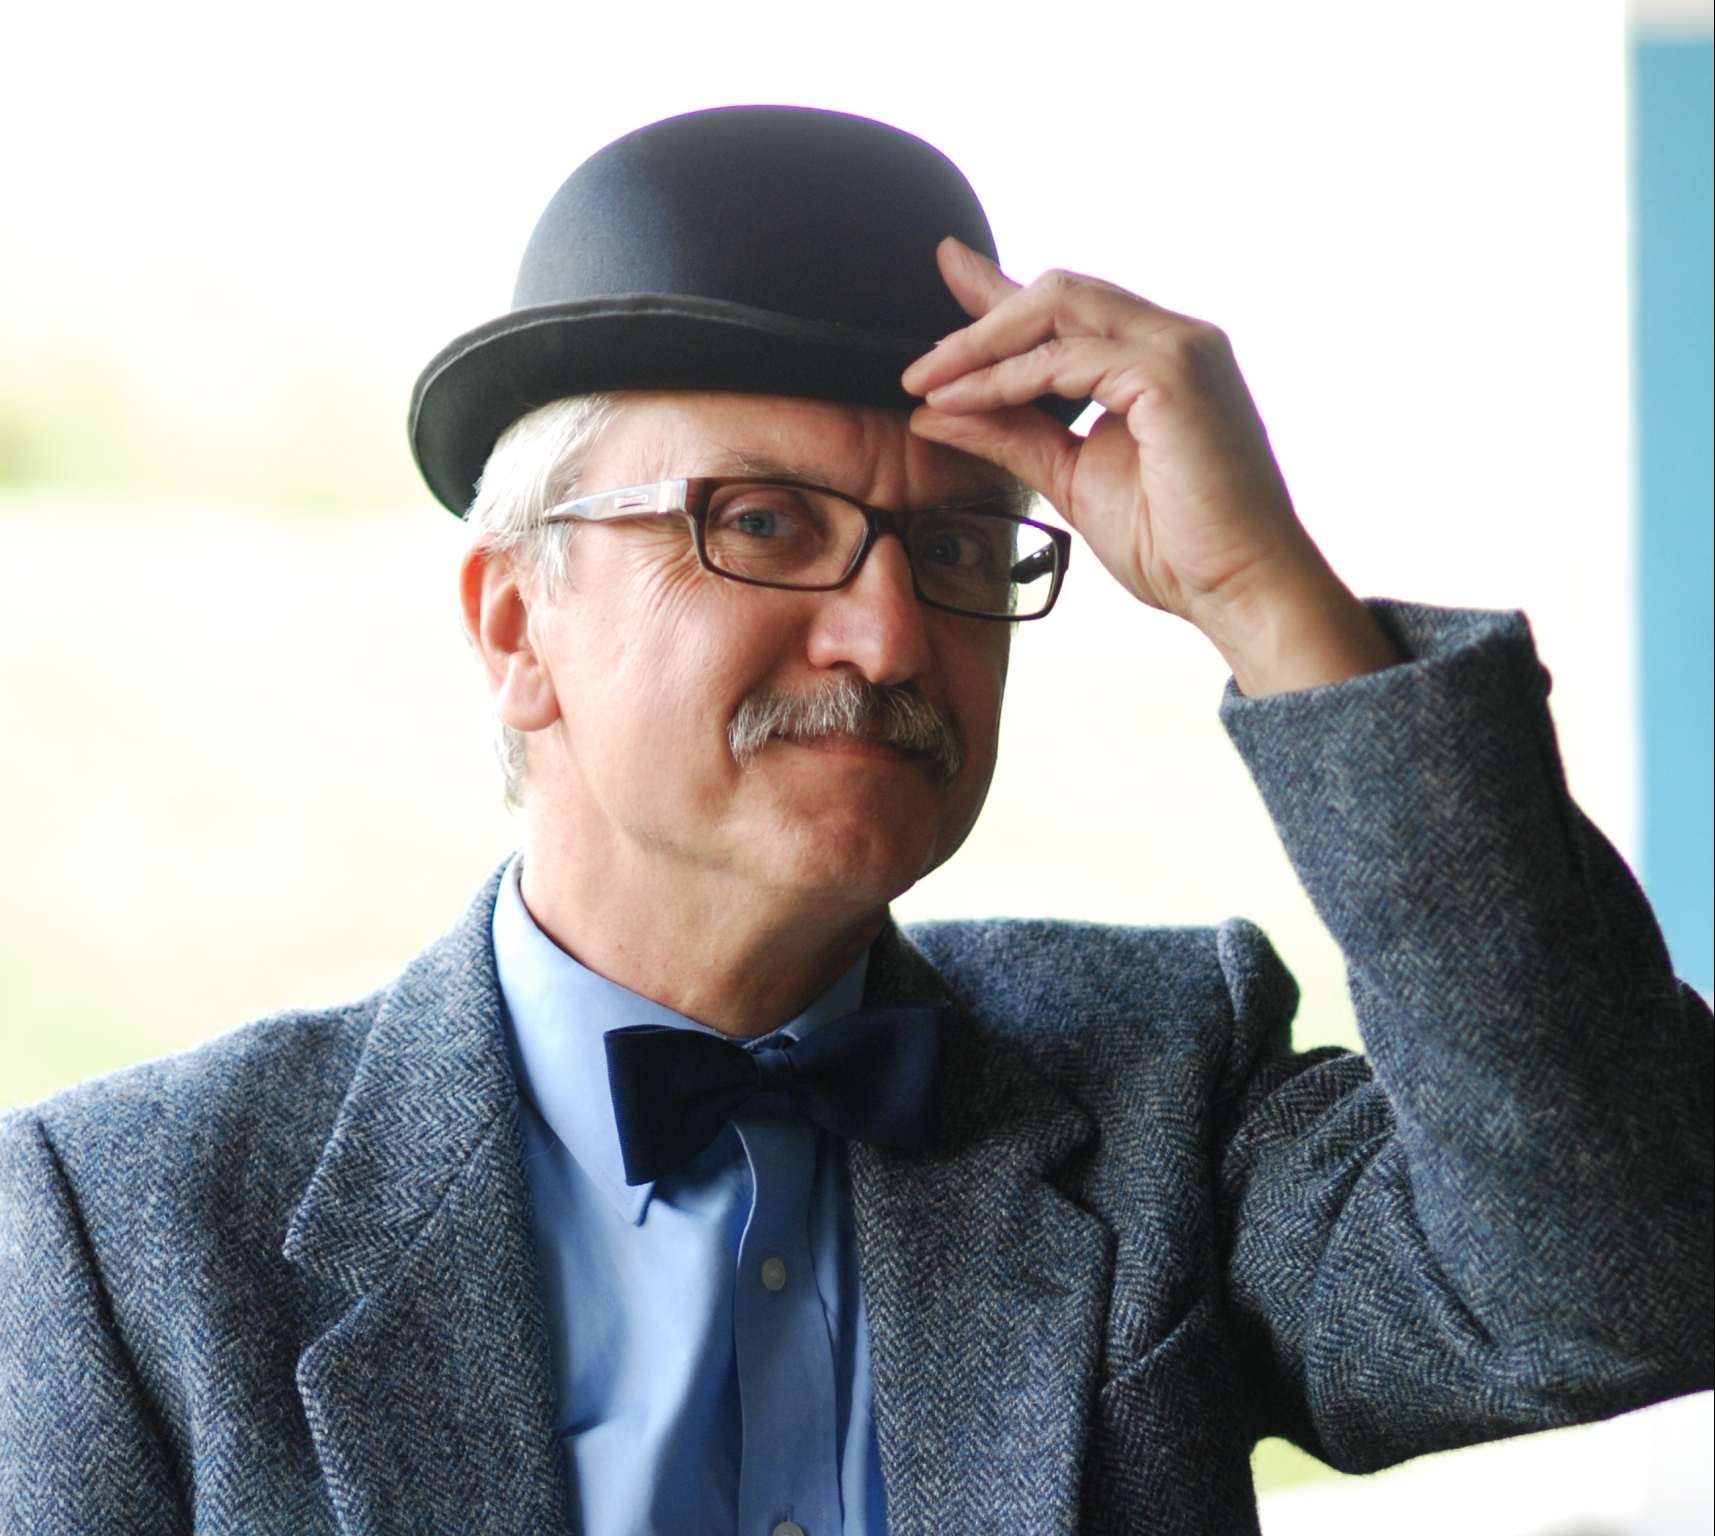 Na zdjęciu znajduje się Wojciech Widłak. Ma na sobie marynarkę, niebieską koszulę, granatową muchę. Autor ma wąsy i okulary, a na głowie kapelusz, który dotyka lewą ręką. Fot. Maciej Wróbel.